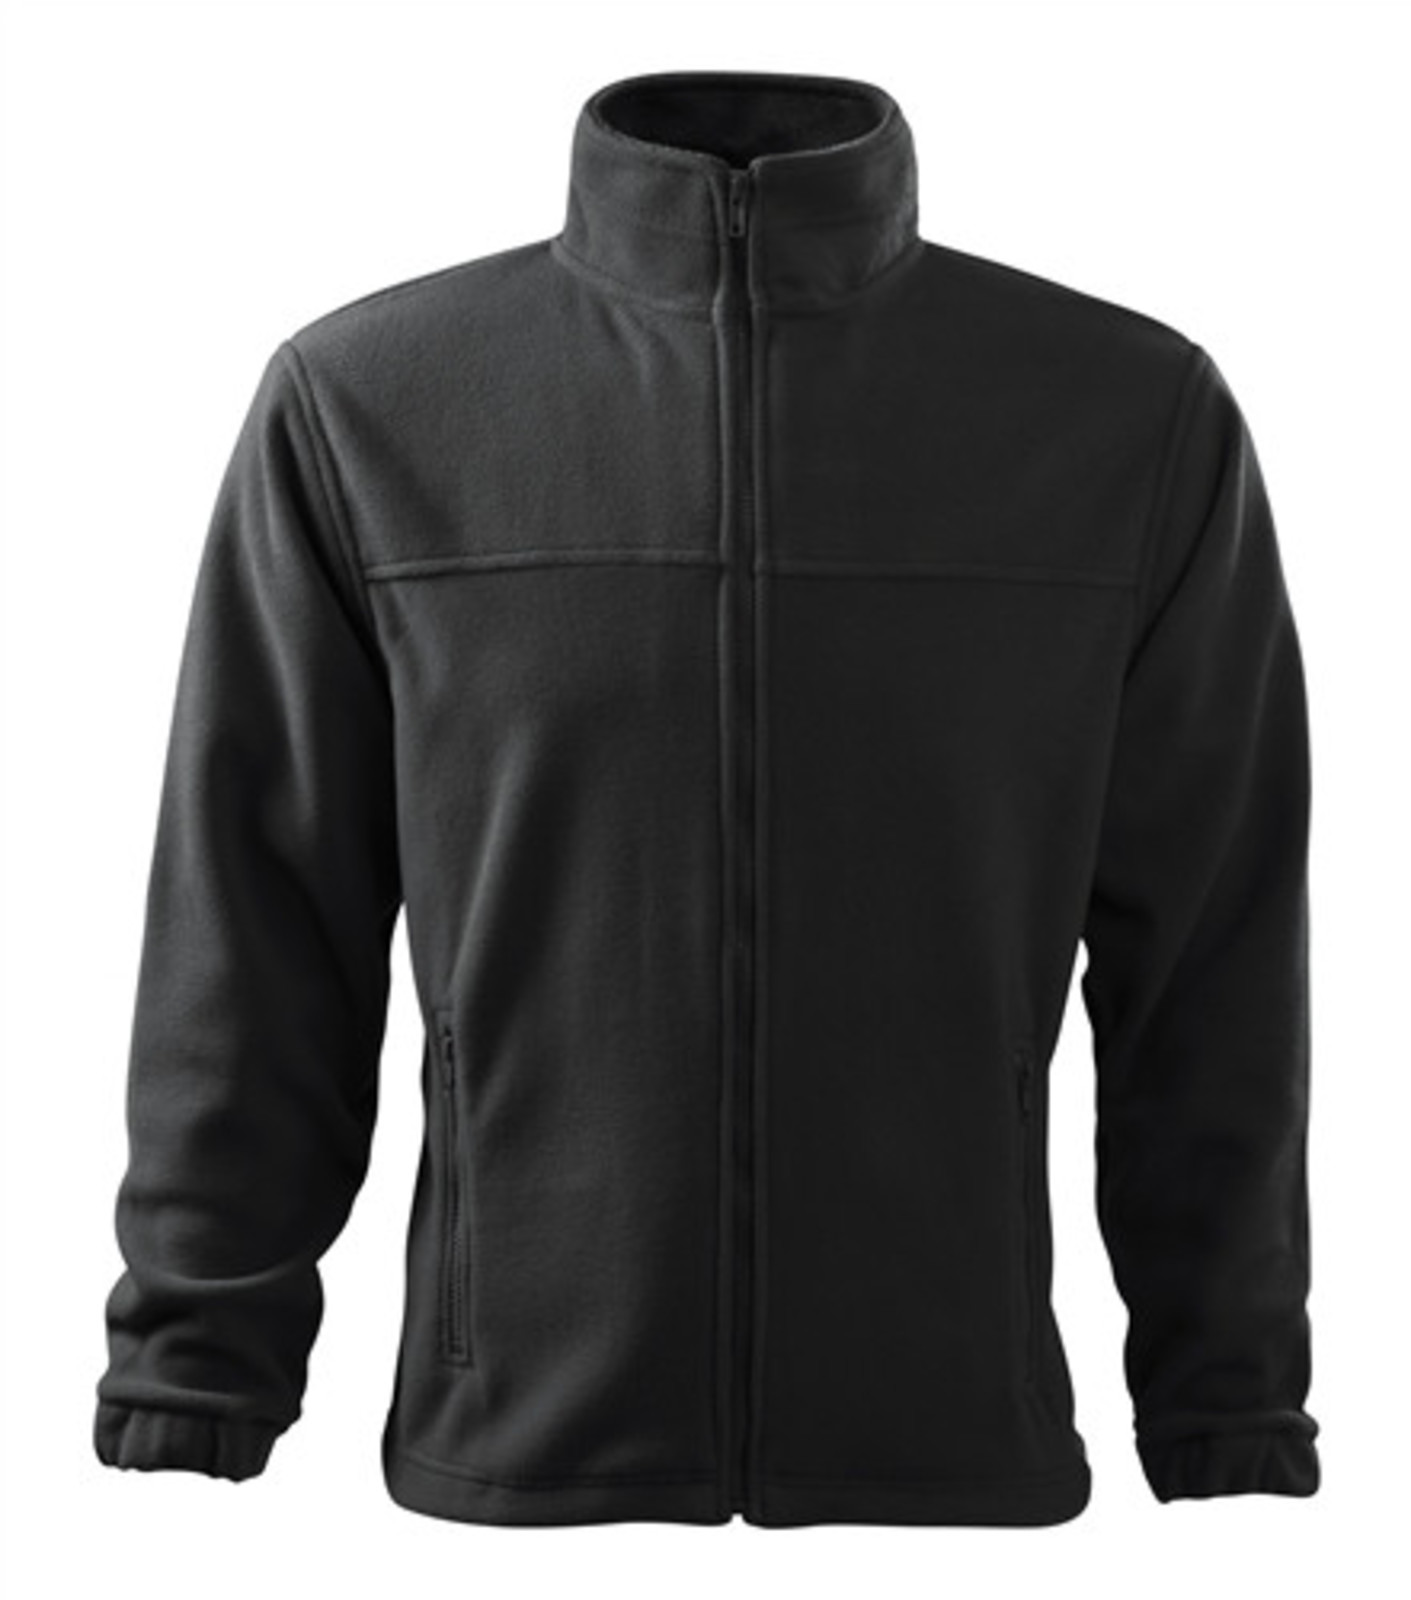 Pánska fleece mikina Rimeck Jacket 501 - veľkosť: XXL, farba: šedá ebony